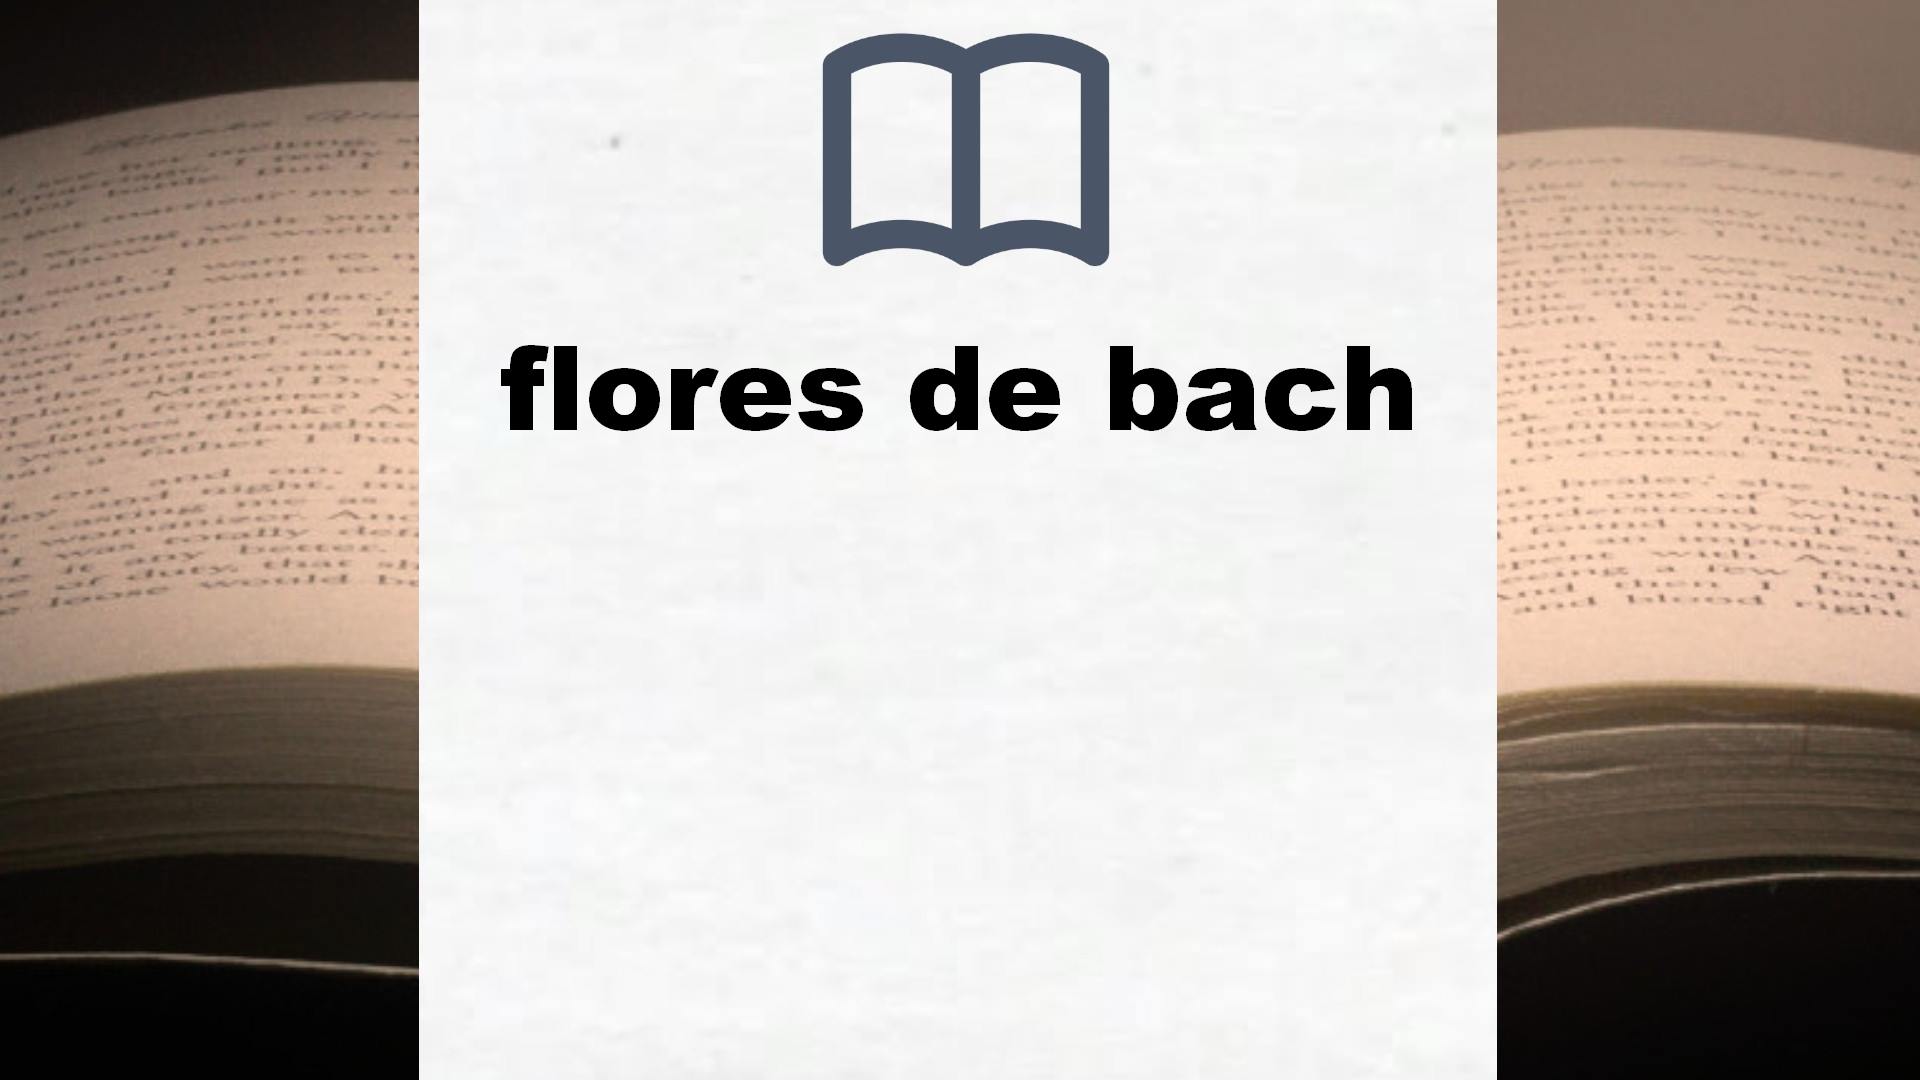 Libros sobre flores de bach